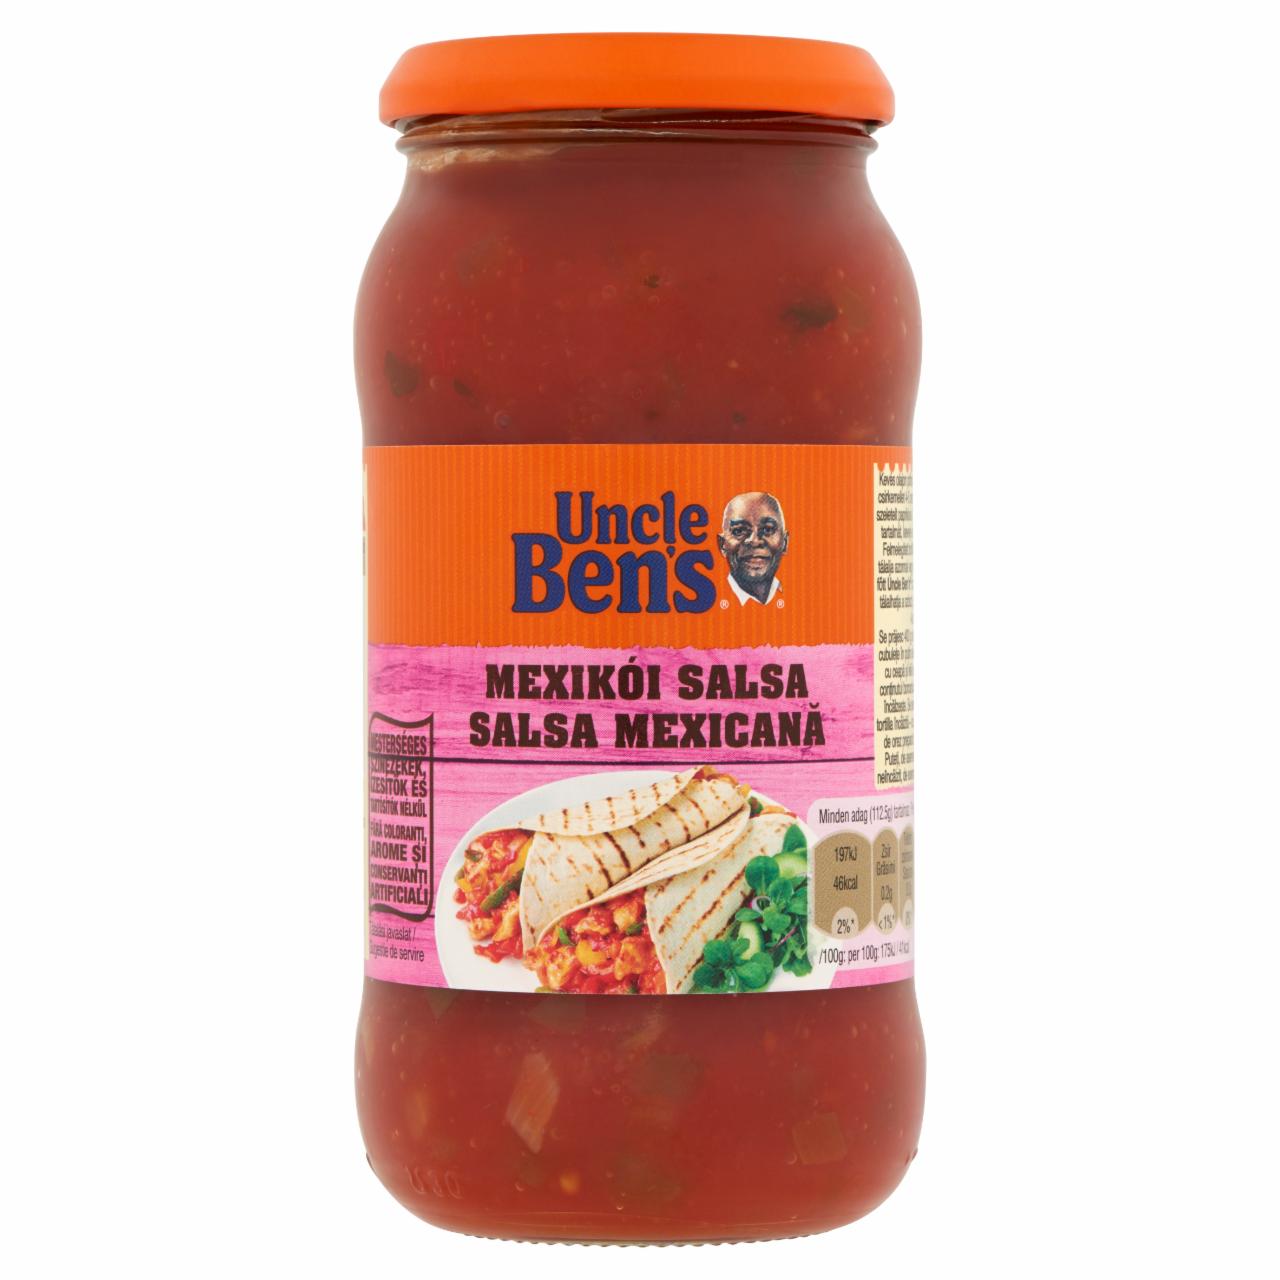 Képek - Uncle Ben's Mexikói Salsa csípős, mexikói típusú paradicsomszósz 450 g